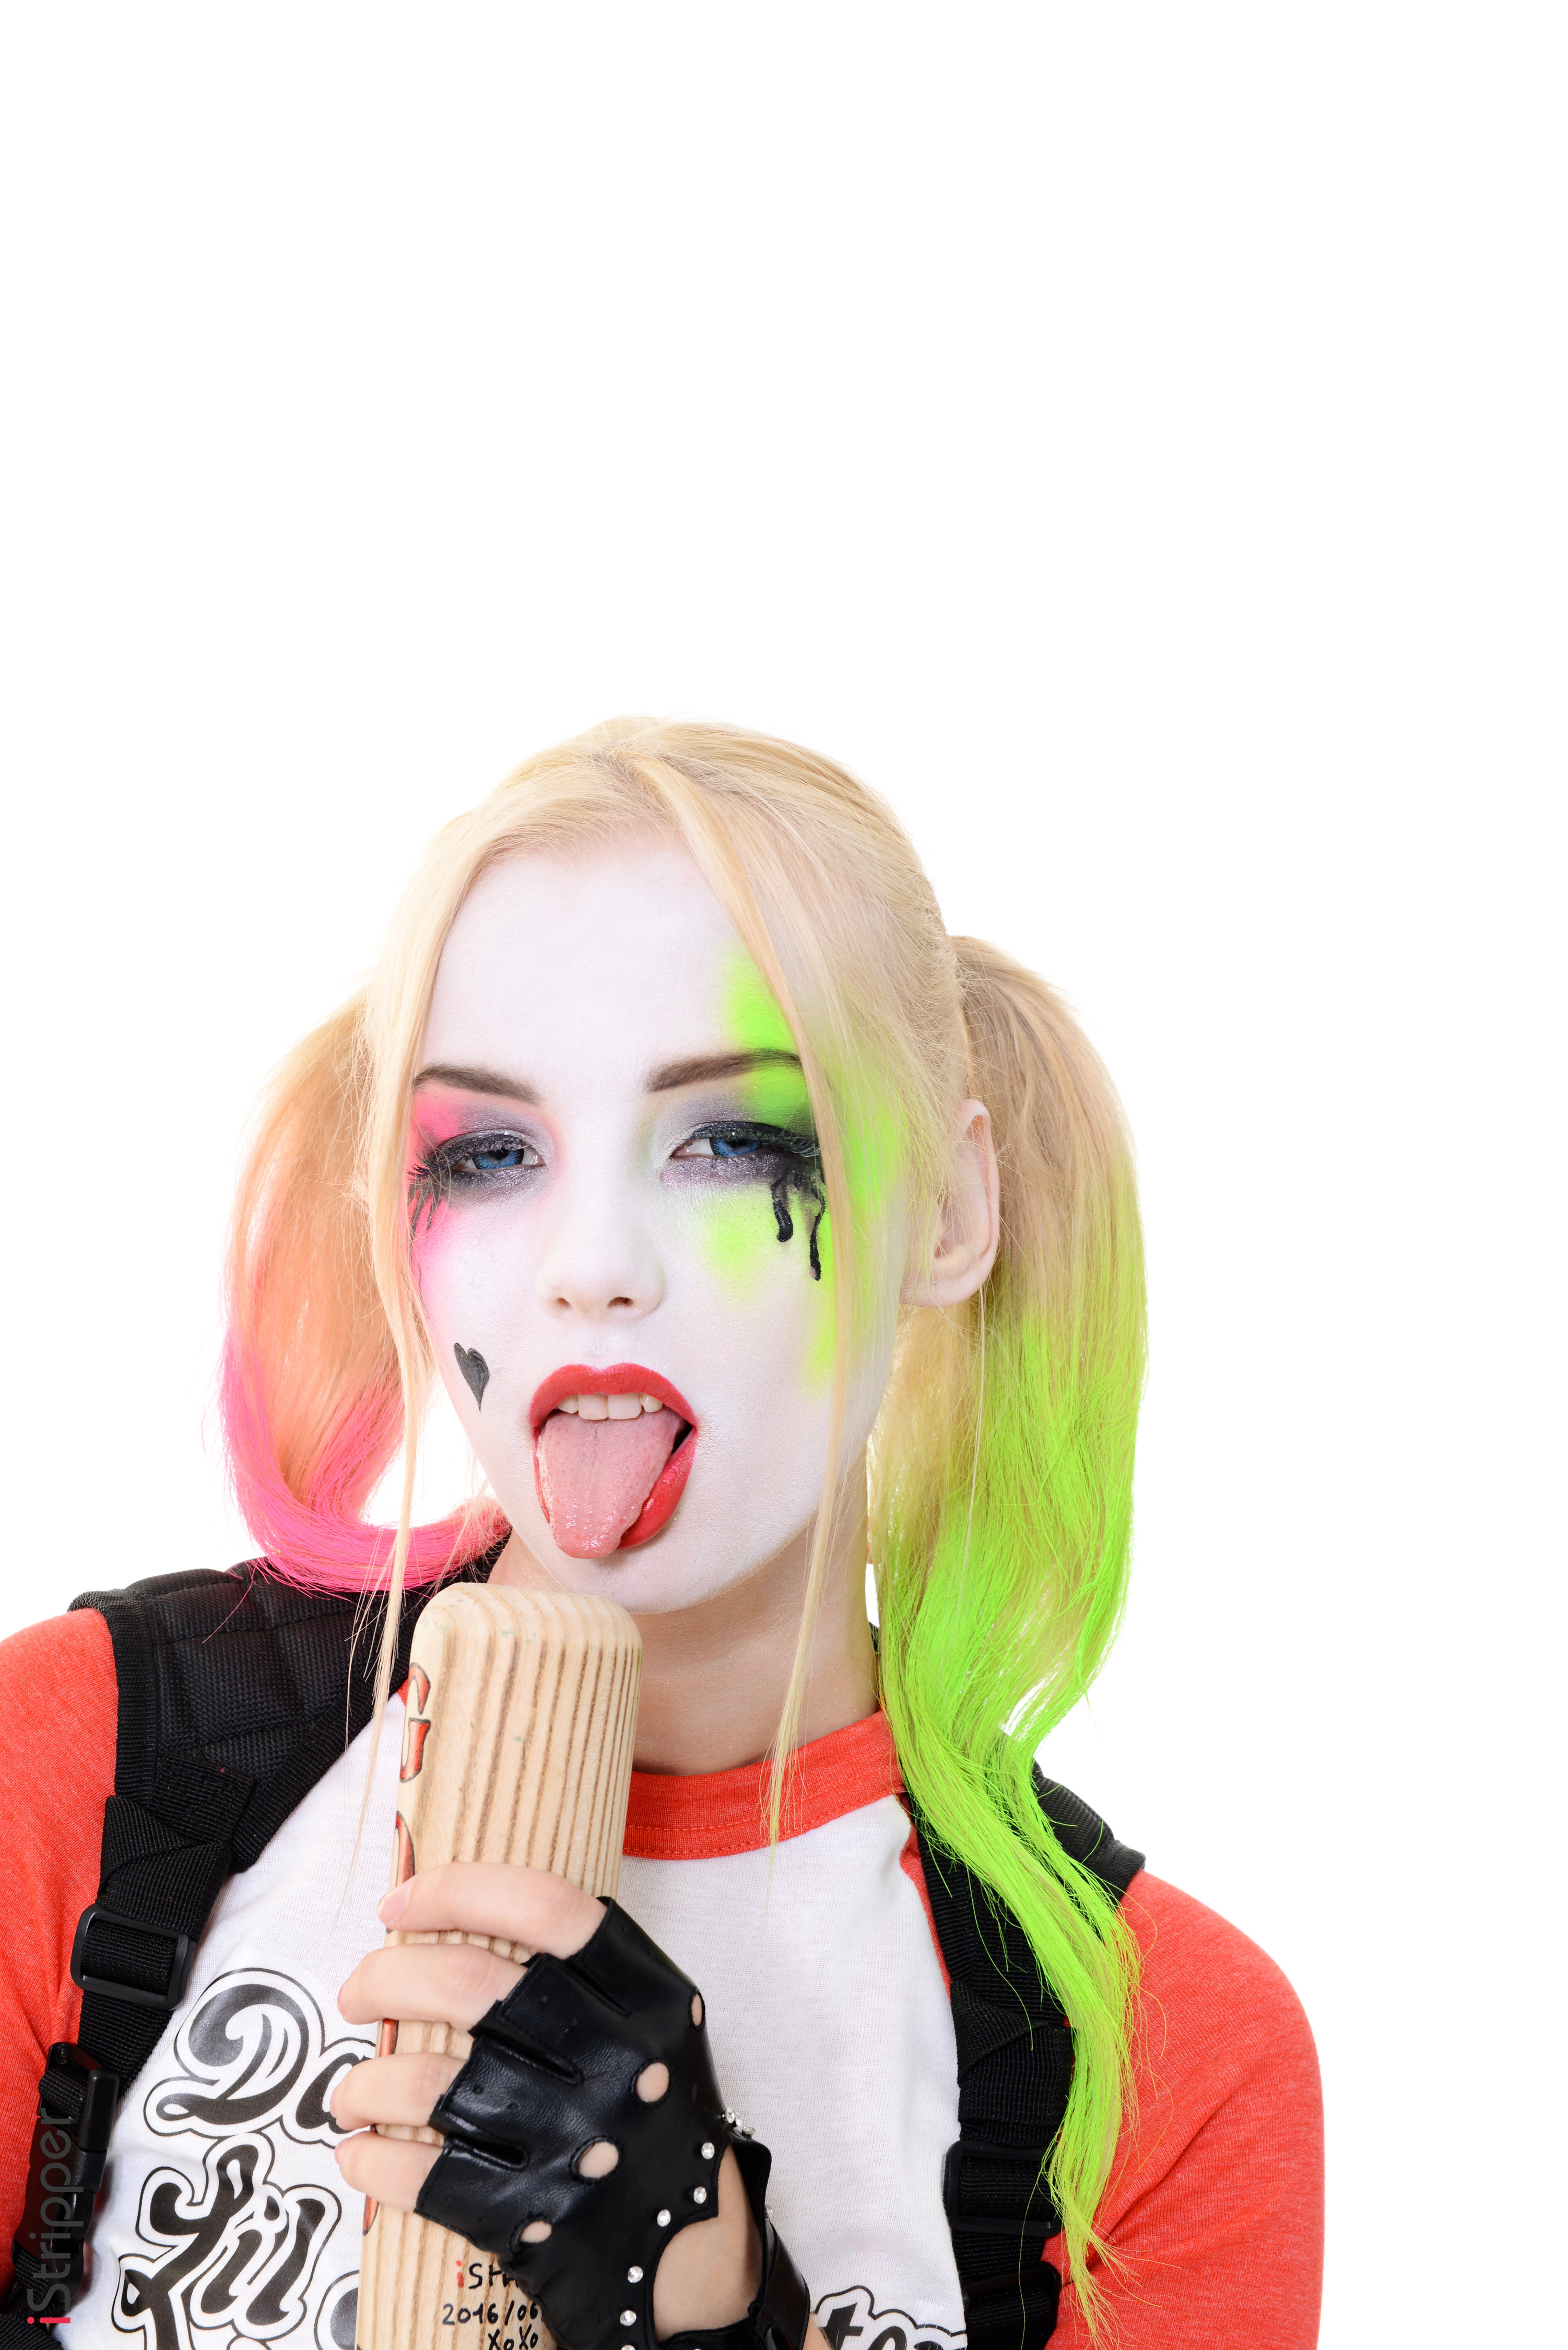 Wallpapers woman blonde Harley Quinn hero on the desktop